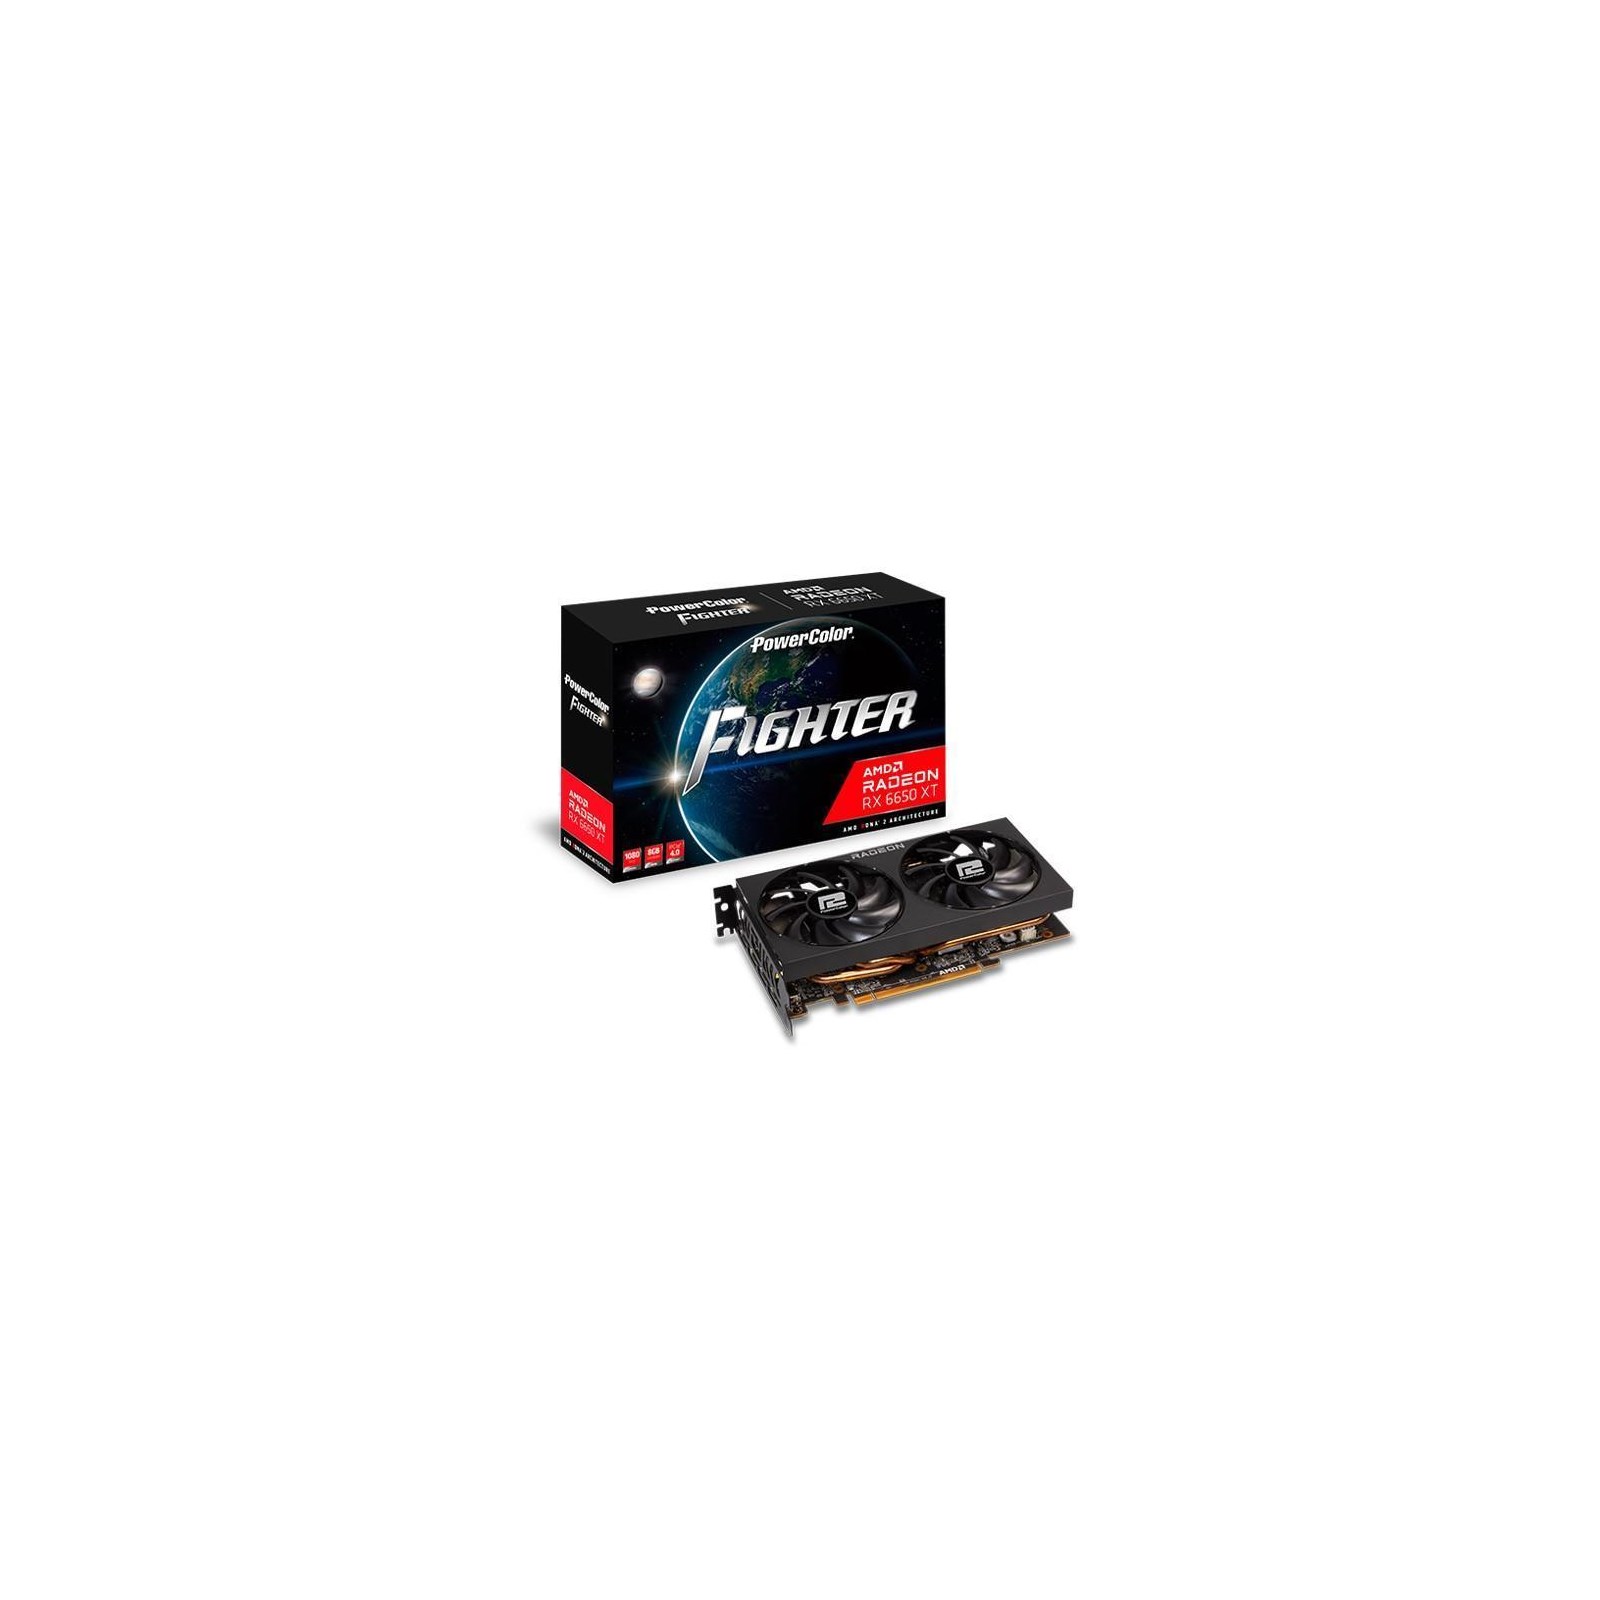 PowerColor Radeon RX 6650 XT Fighter 8GB GPU - AXRX 6650XT 8GBD6-3DH